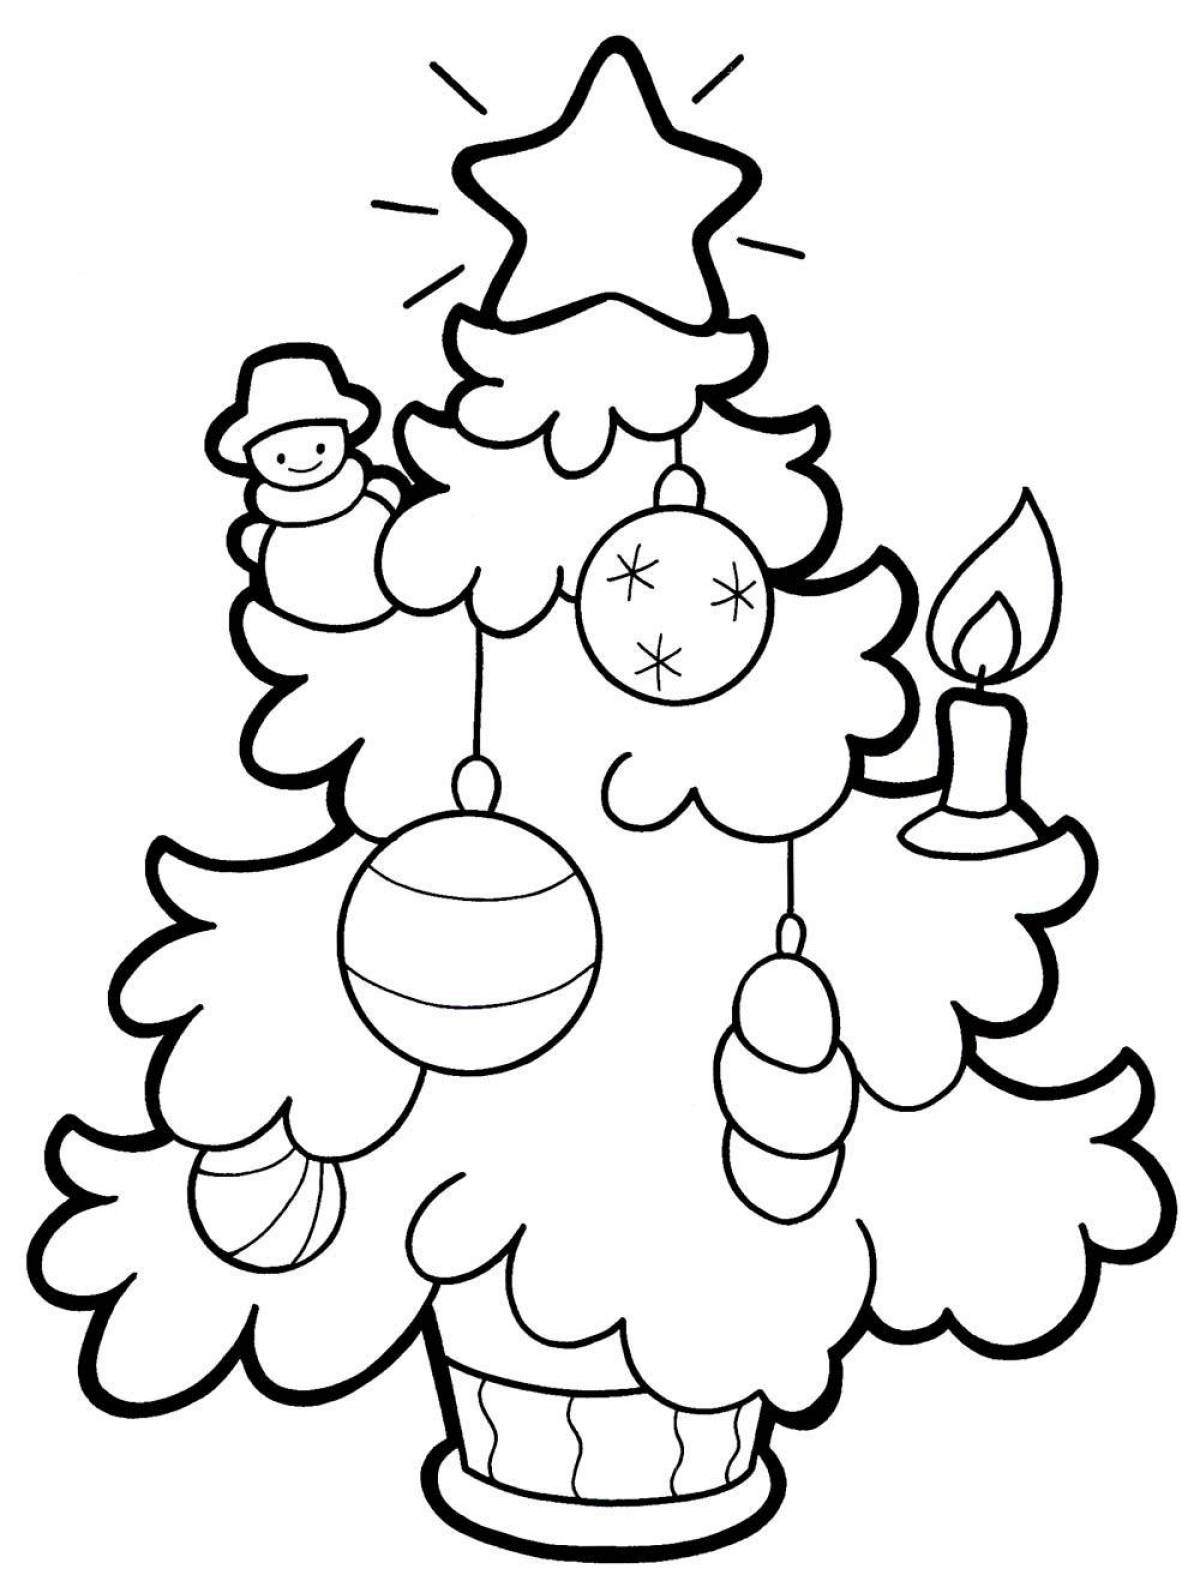 Великолепная раскраска «рождественская елка» для малышей 2-3 лет